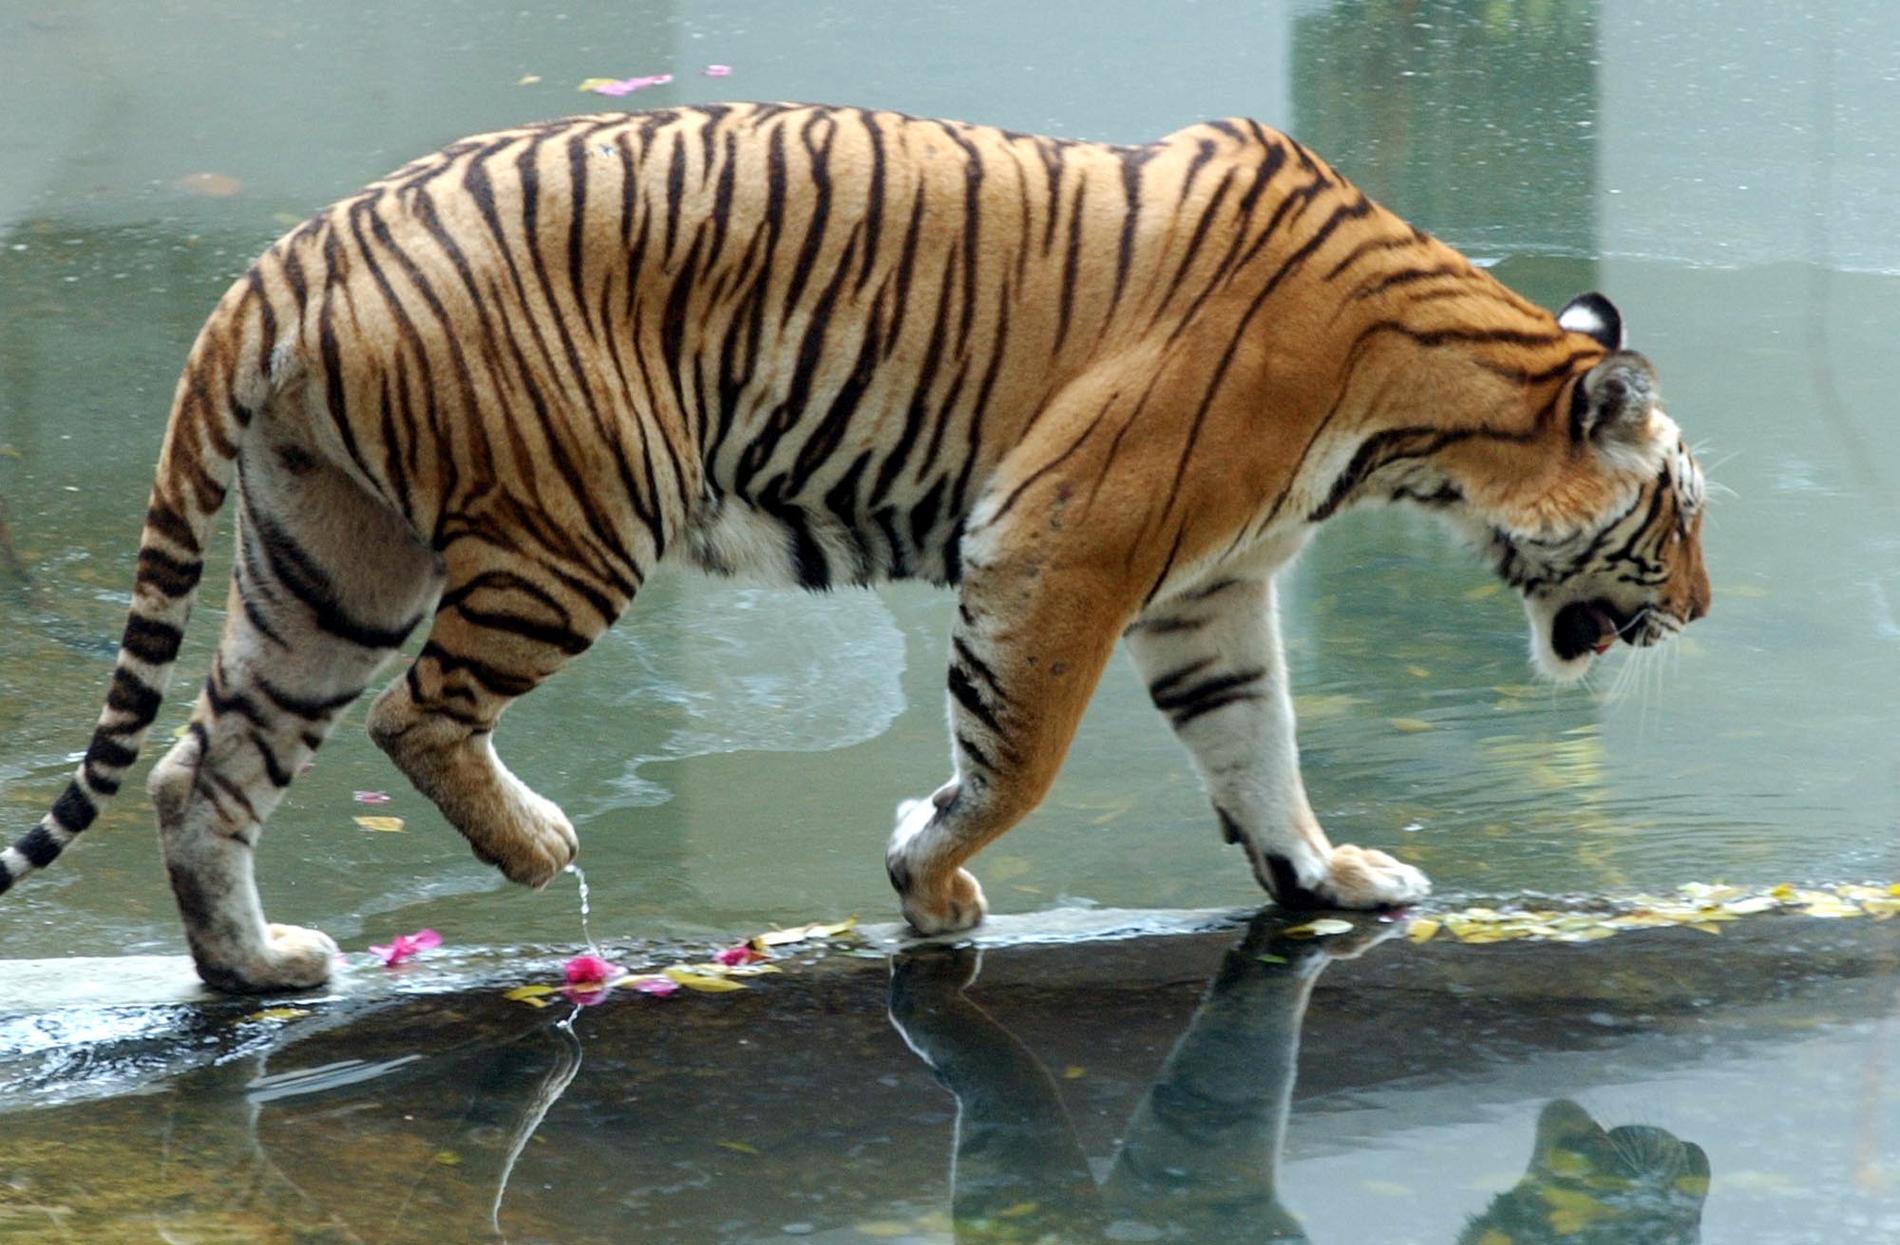 En bengalisk tiger har gått lös i Houston, Texas, den senaste veckan. Det här djuret bor dock på en djurpark i Bangkok, Thailand. Arkivbild.